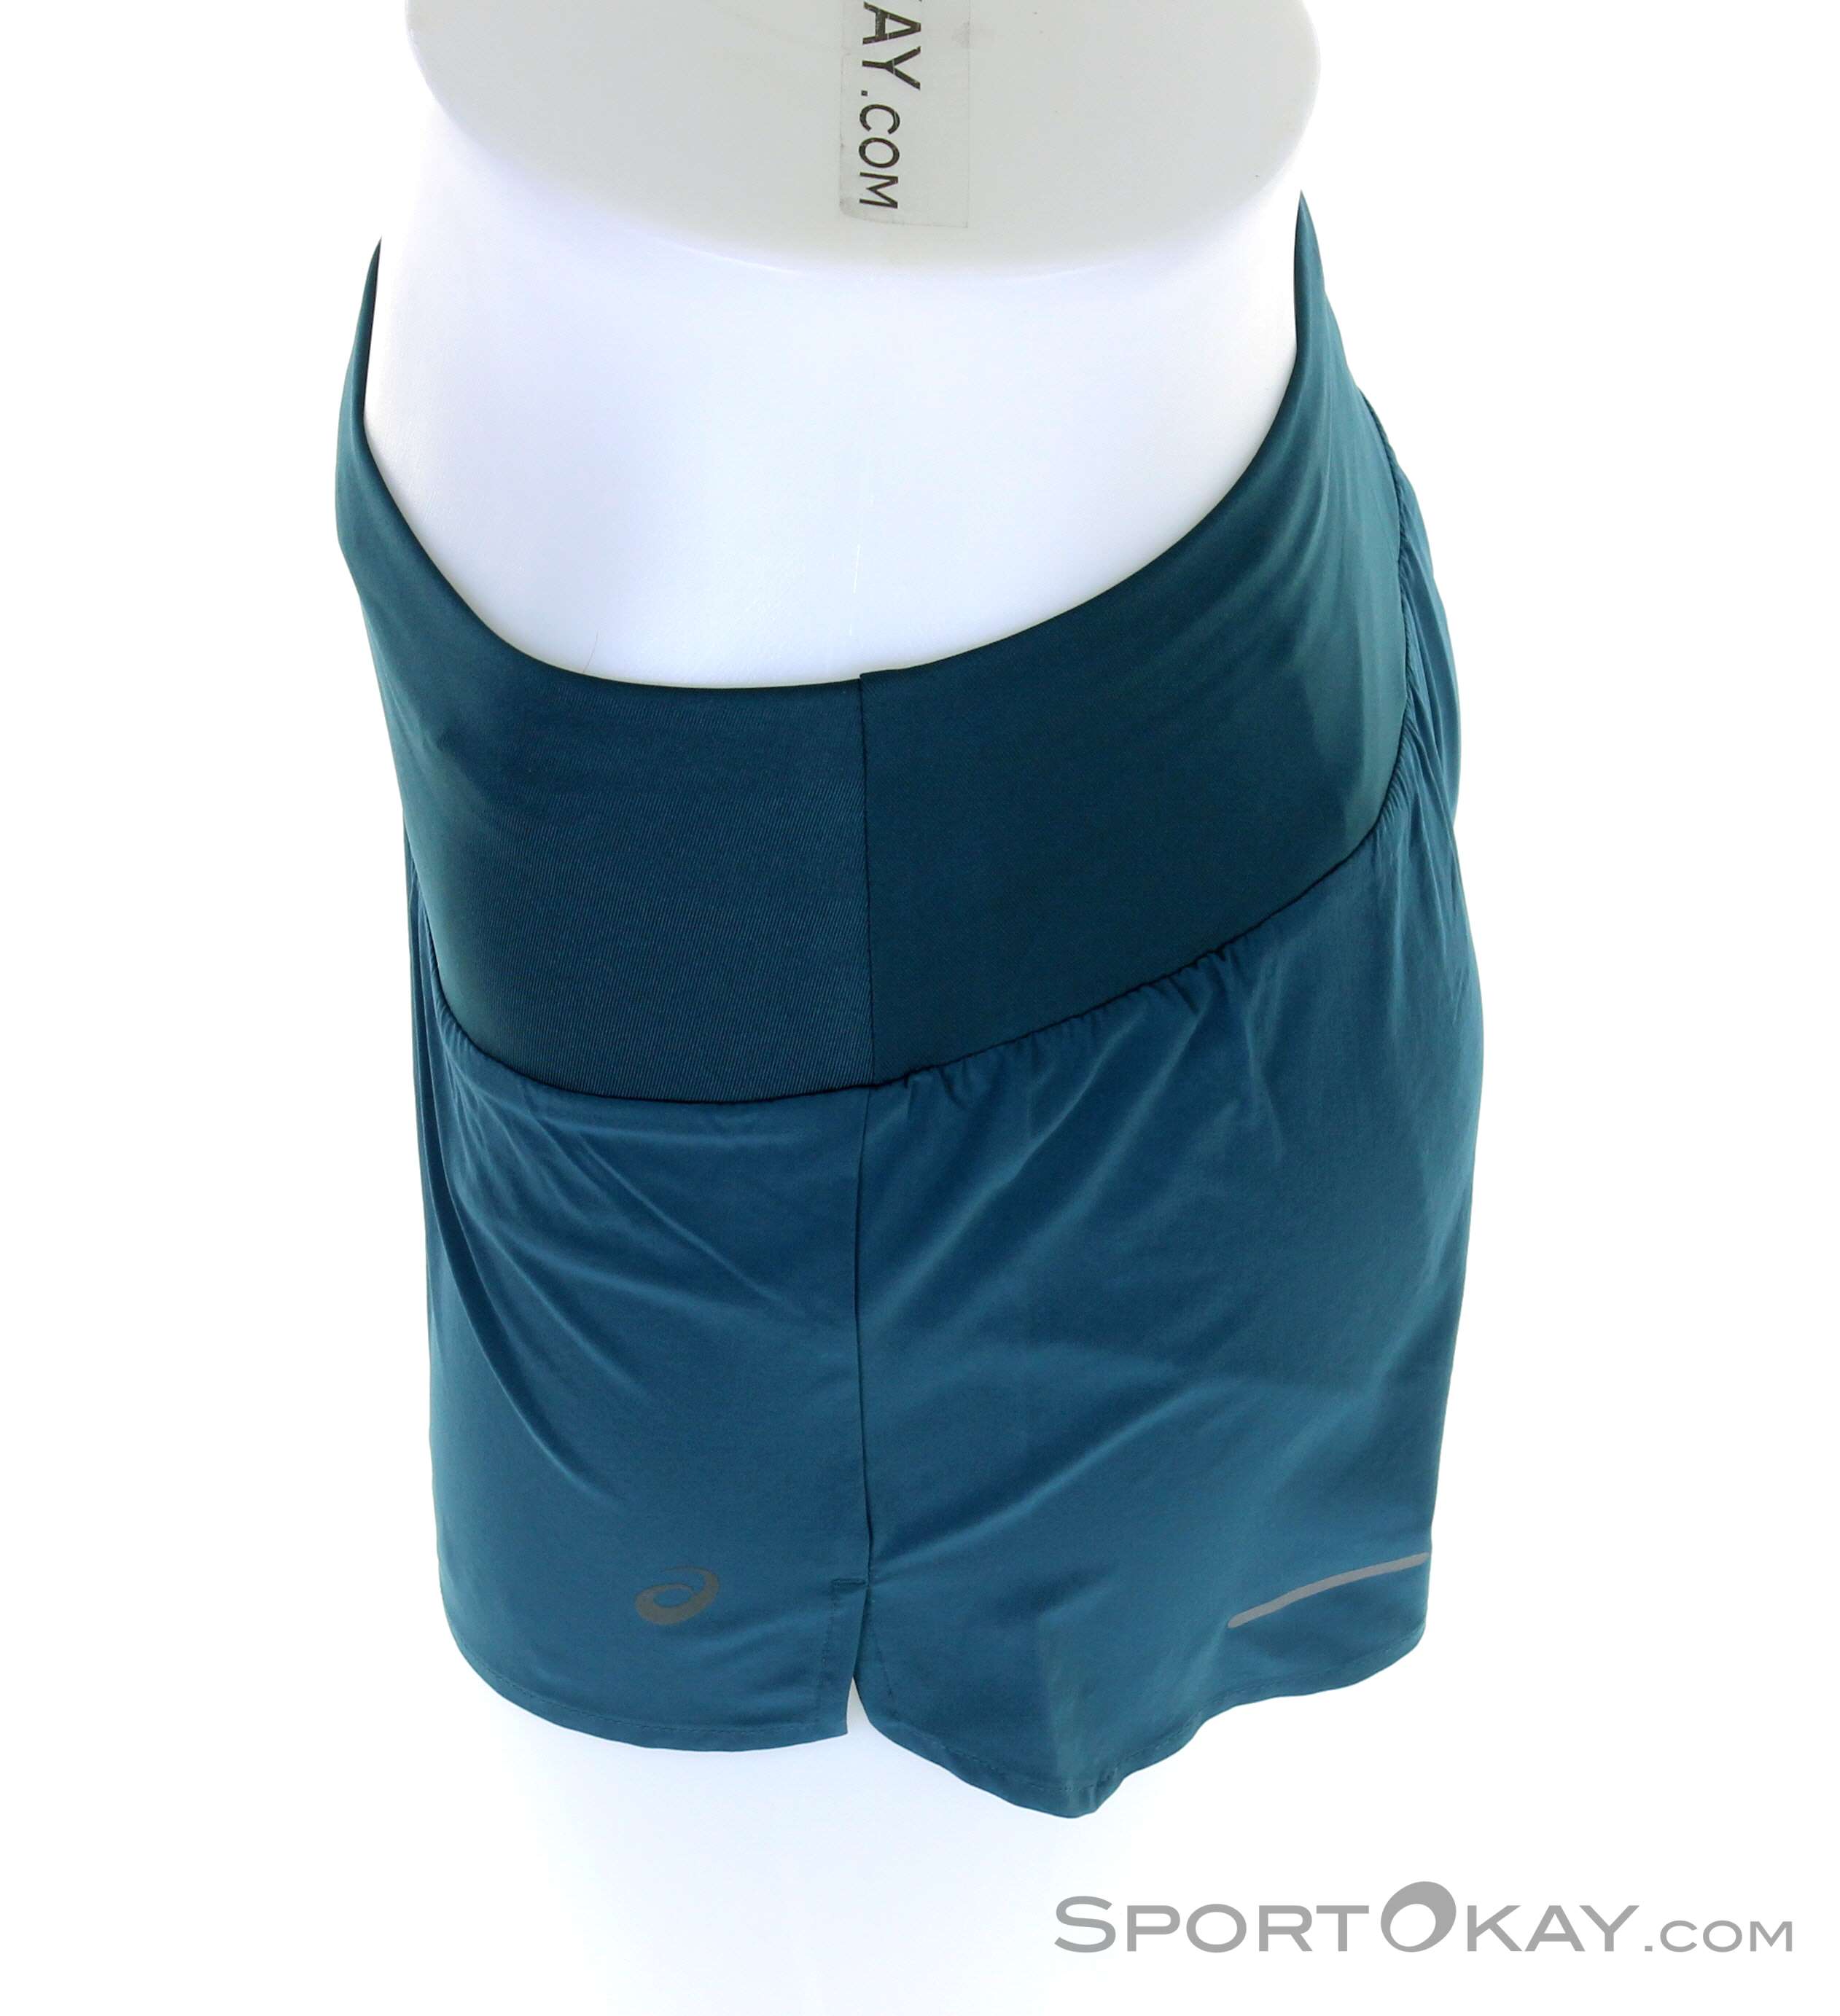 Asics Asics Running Road 3,5 Running Clothing Women - Short Pants All - in Running Shorts - 